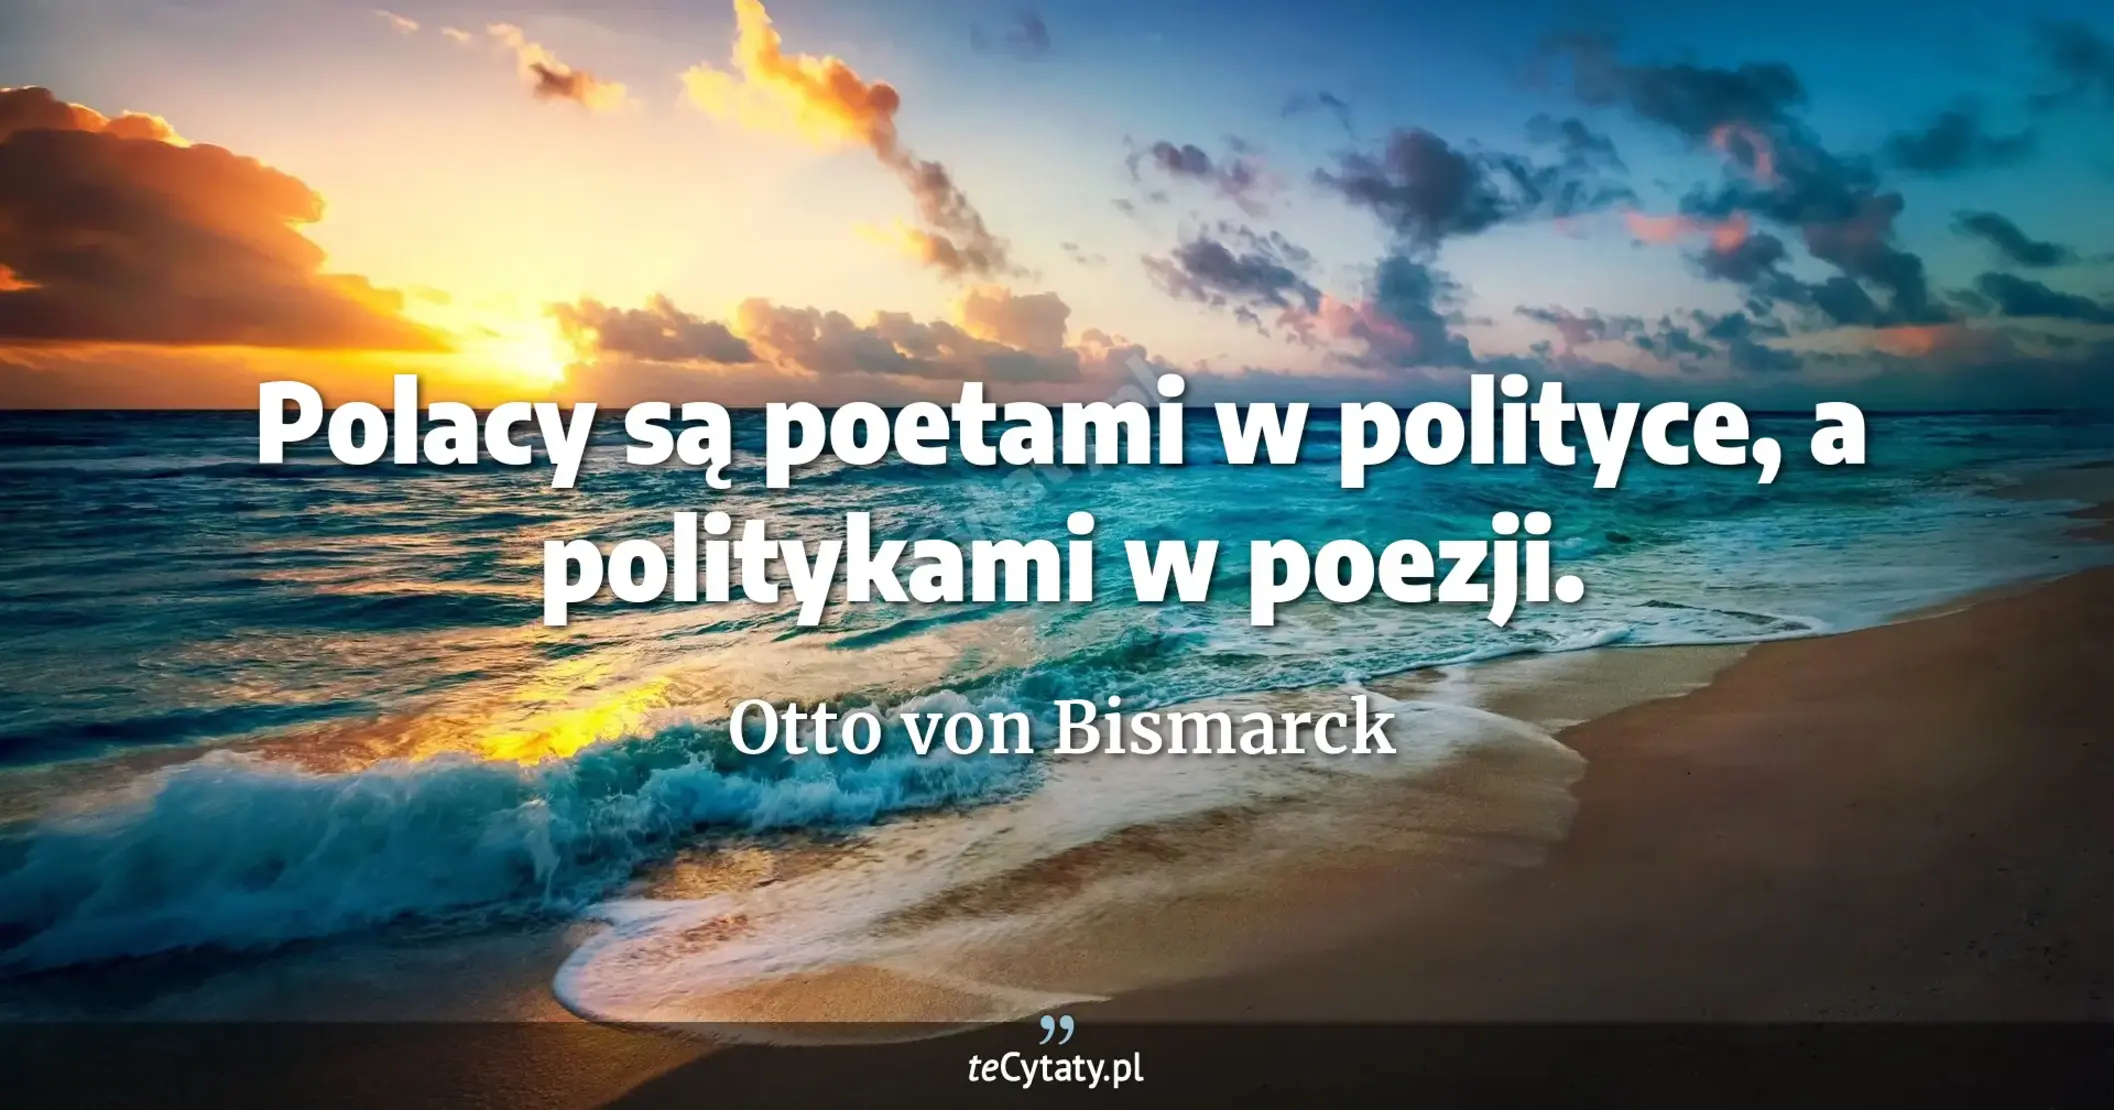 Polacy są poetami w polityce, a politykami w poezji. - Otto von Bismarck